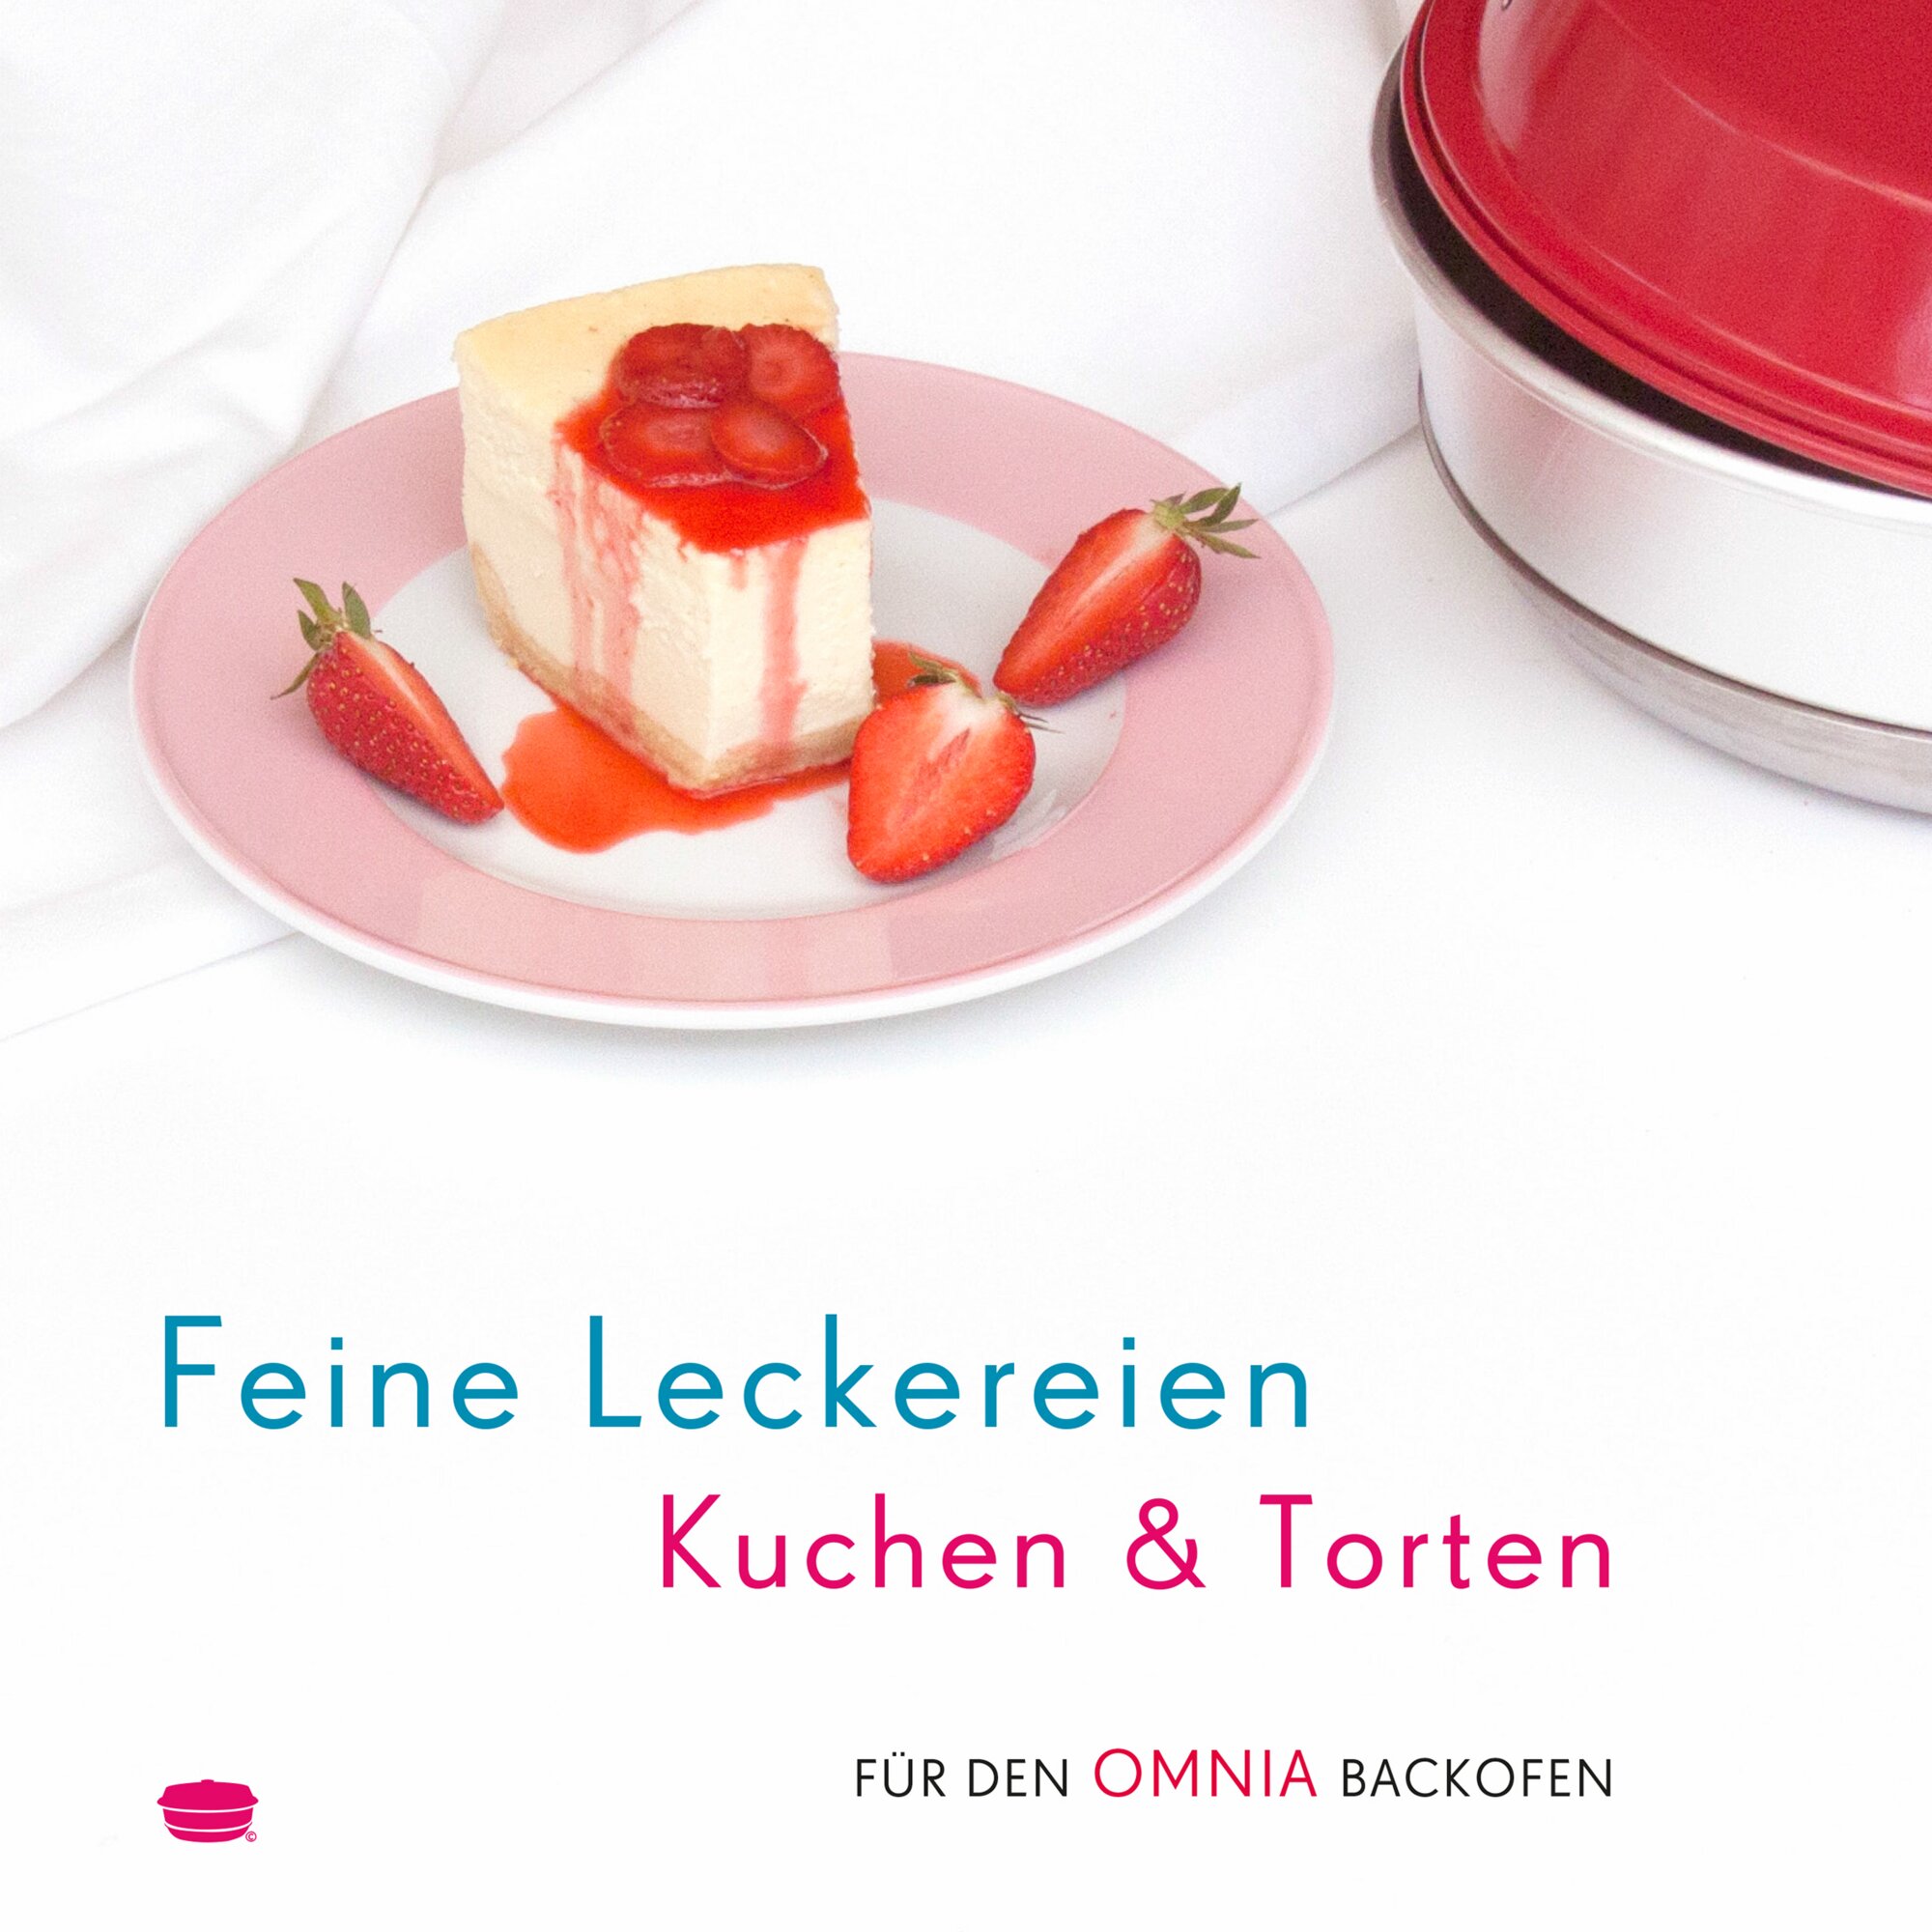 Feine Leckereien Kuchen & Torten – Rezepte für den Omnia Backofen – Backbuch